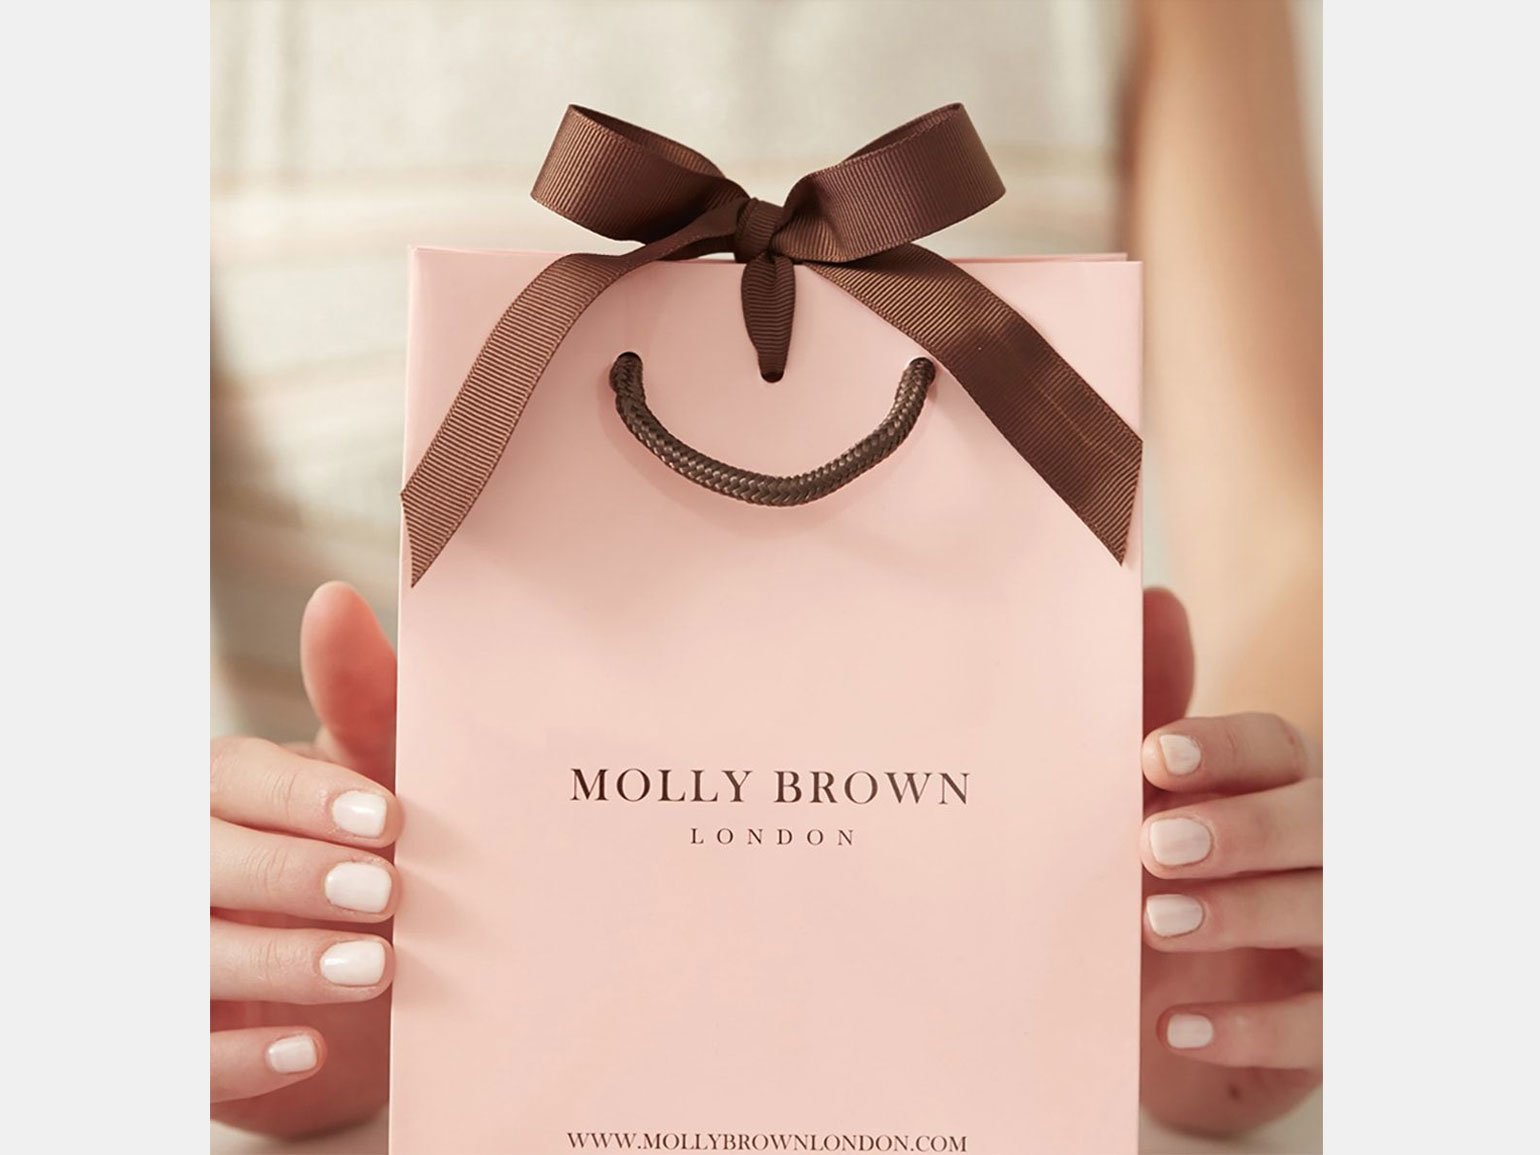 одарочный пакет для ювелирных изделий Molly Brown London бледно-розового цвета с коричневыми ручками и коричневой ленточкой